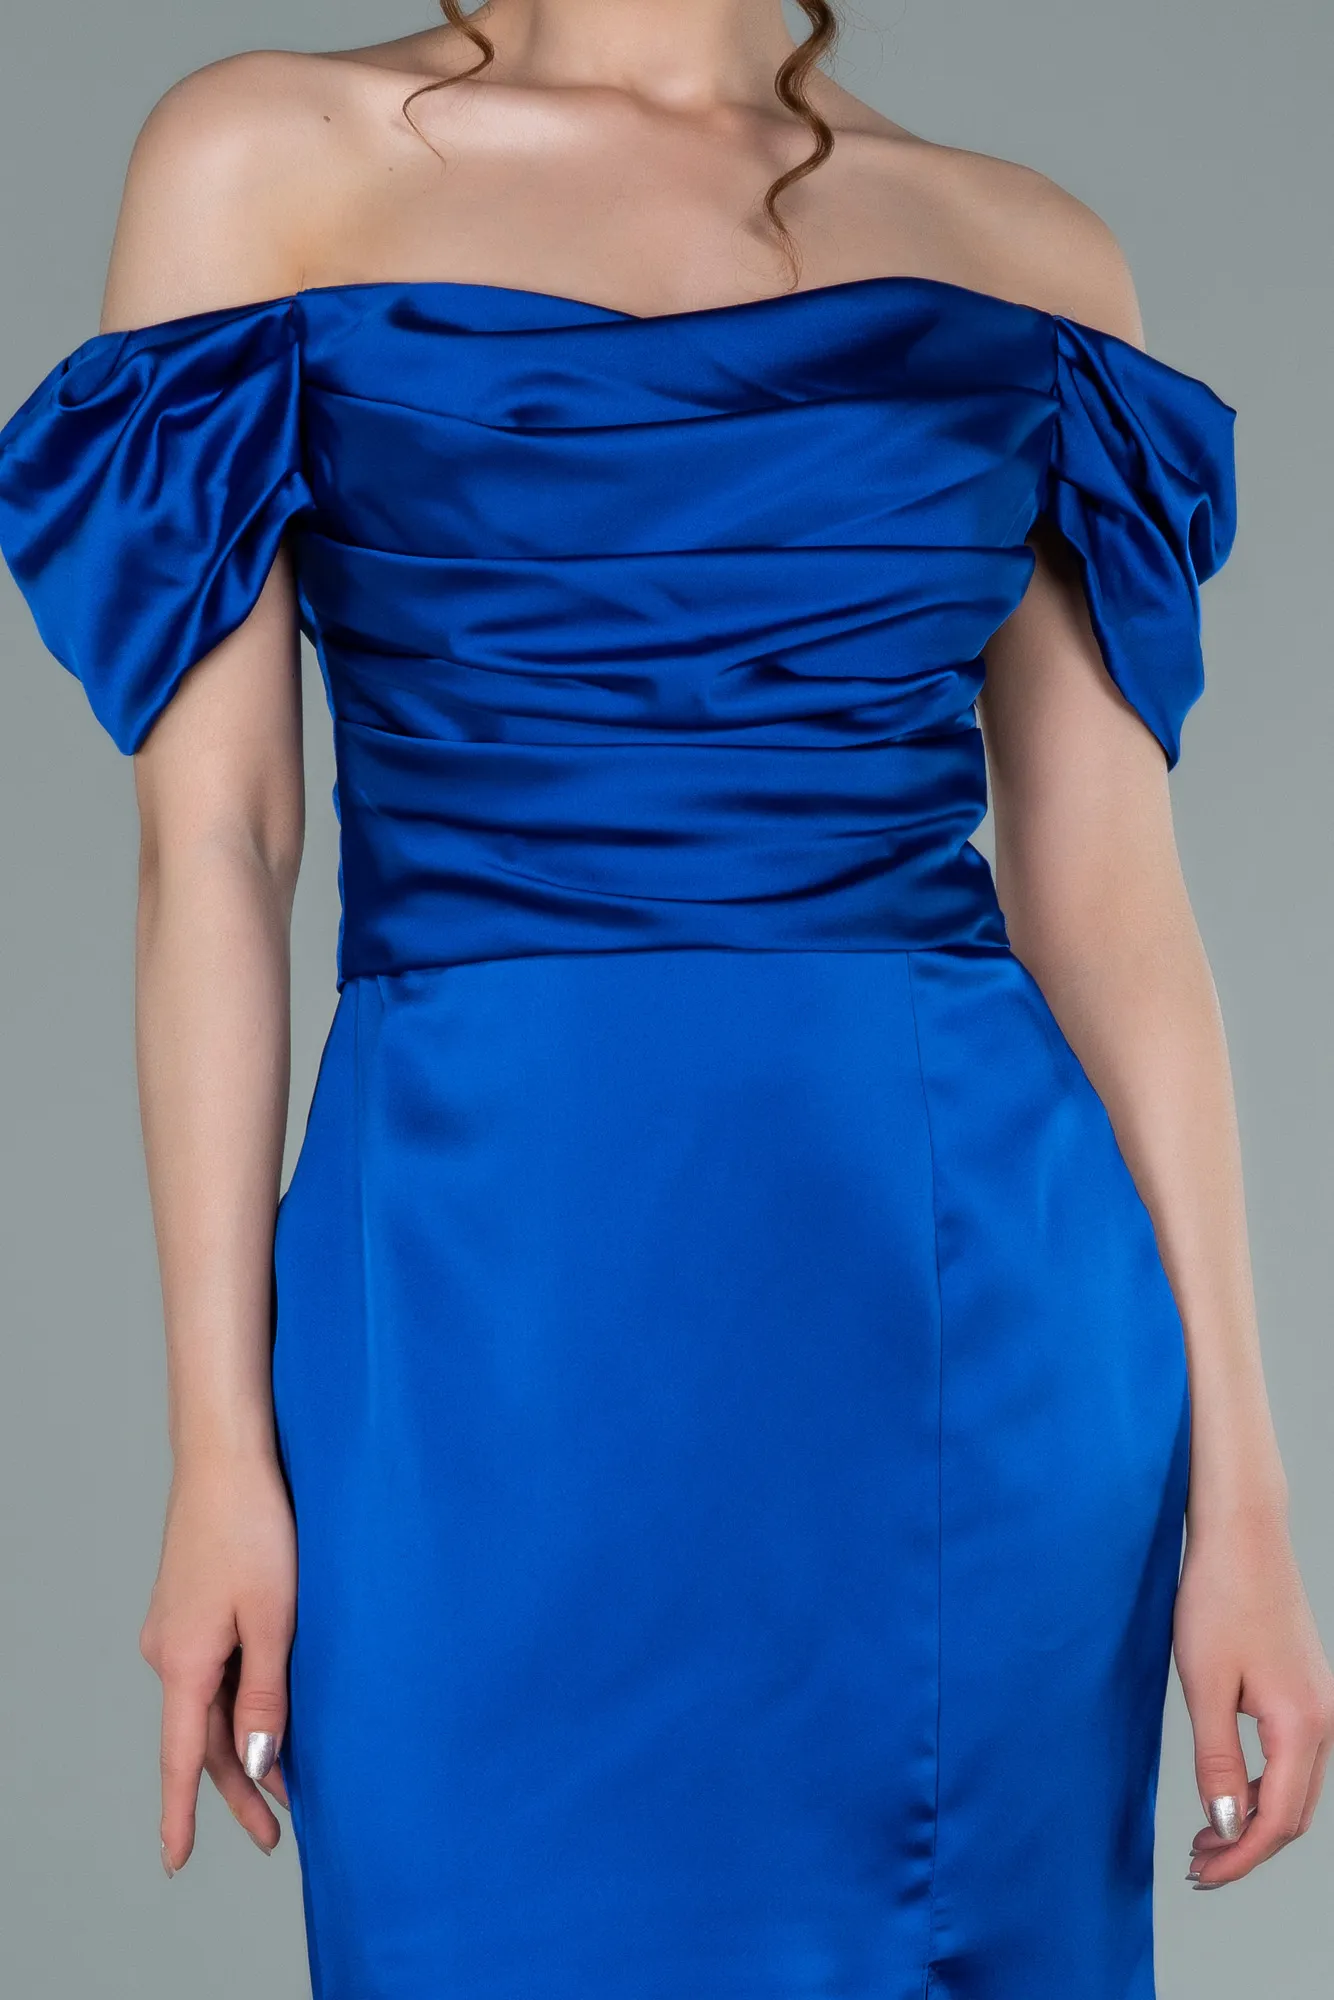 Sax Blue-Short Satin Invitation Dress ABK1394